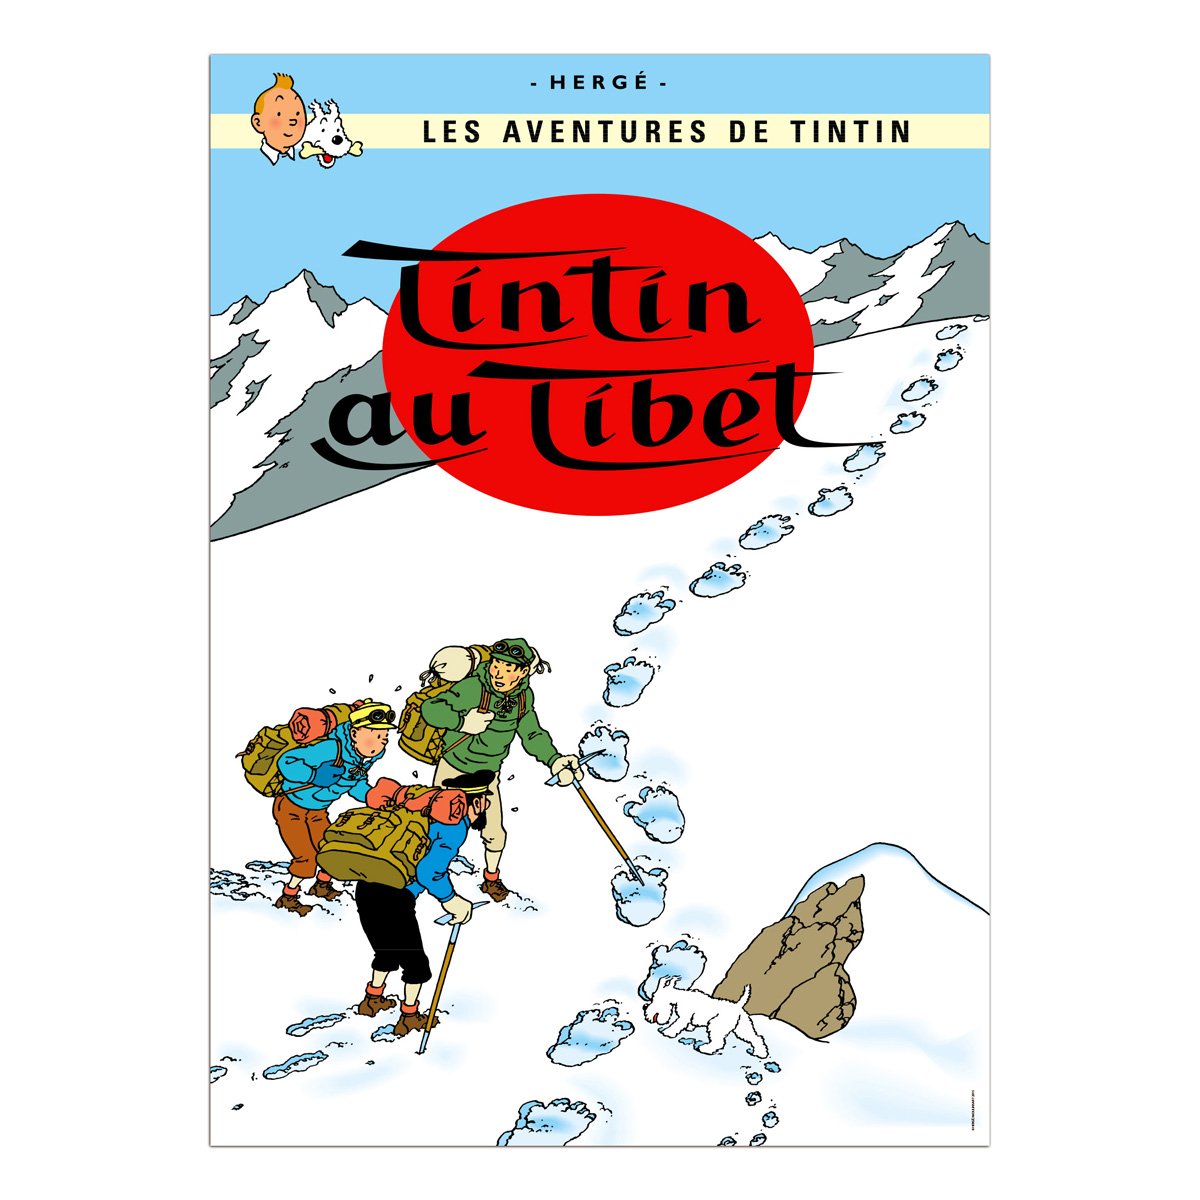 Tintin book postcards Tibet